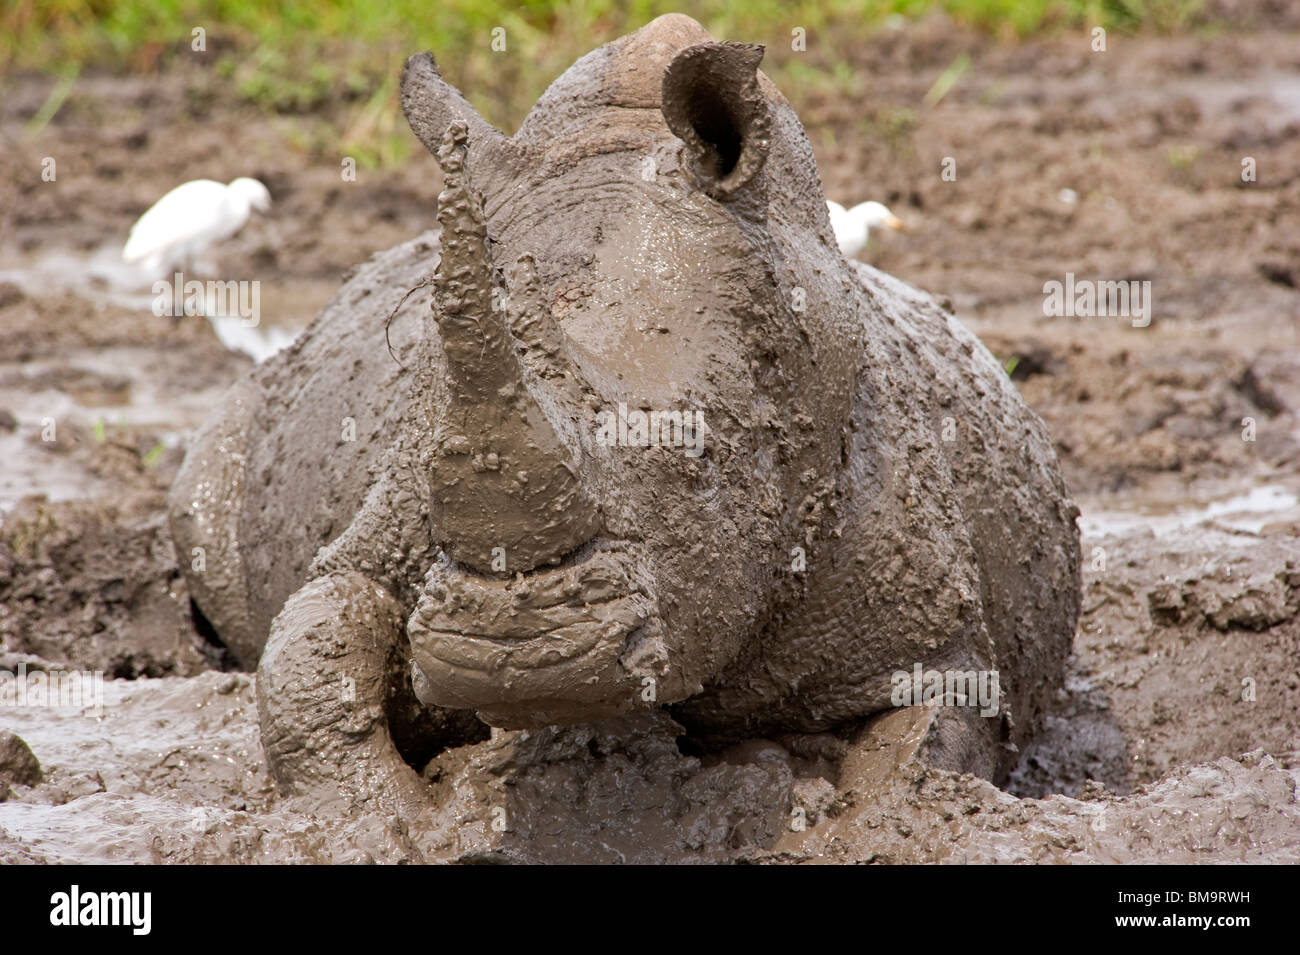 White Rhino bathing in mud Stock Photo